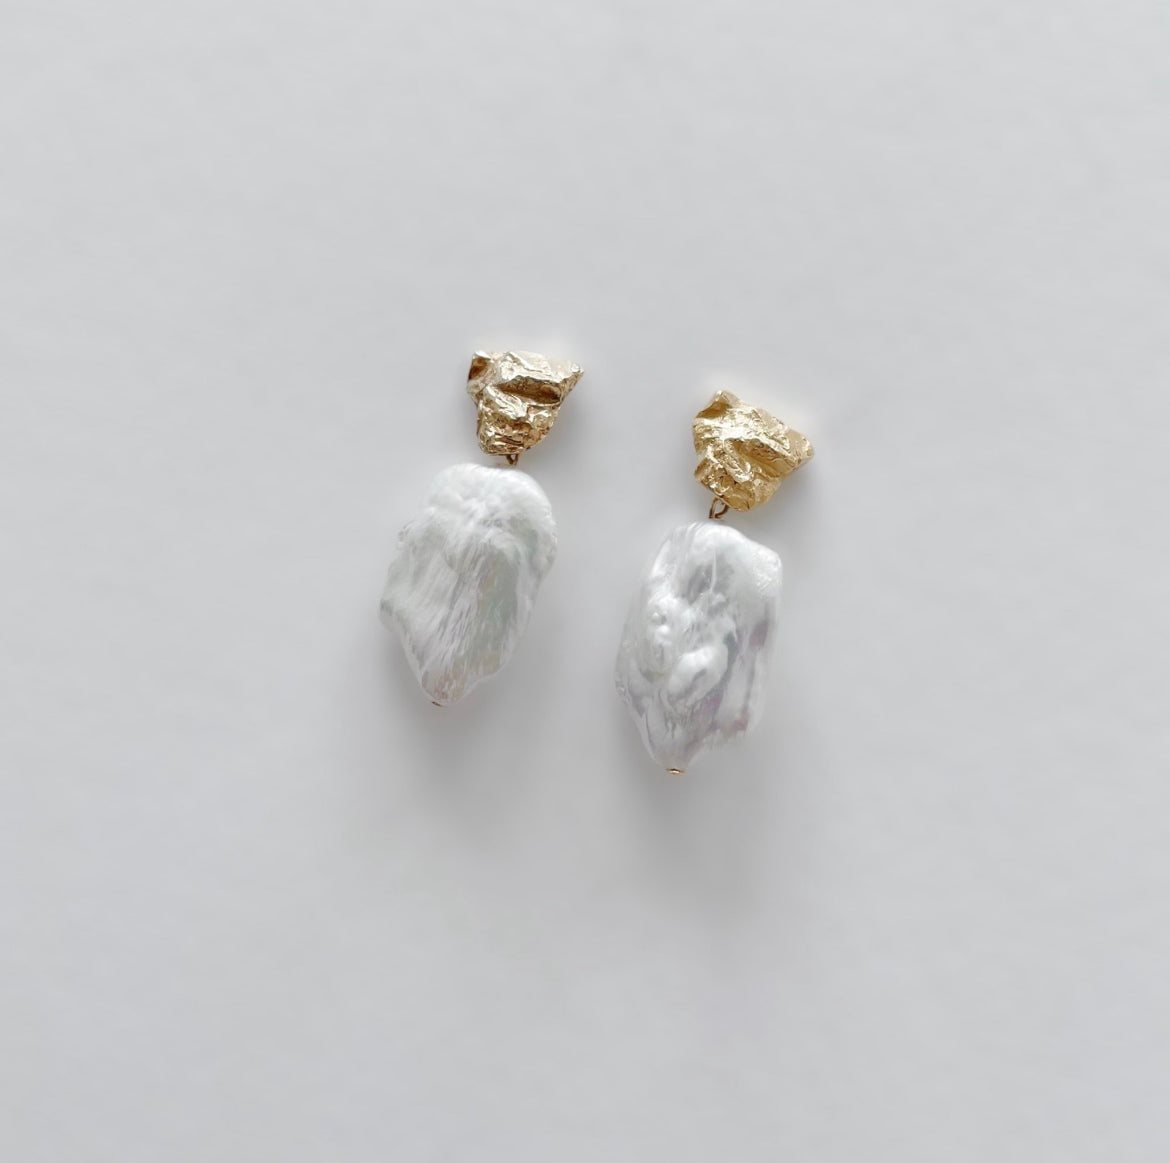 Cliff earrings